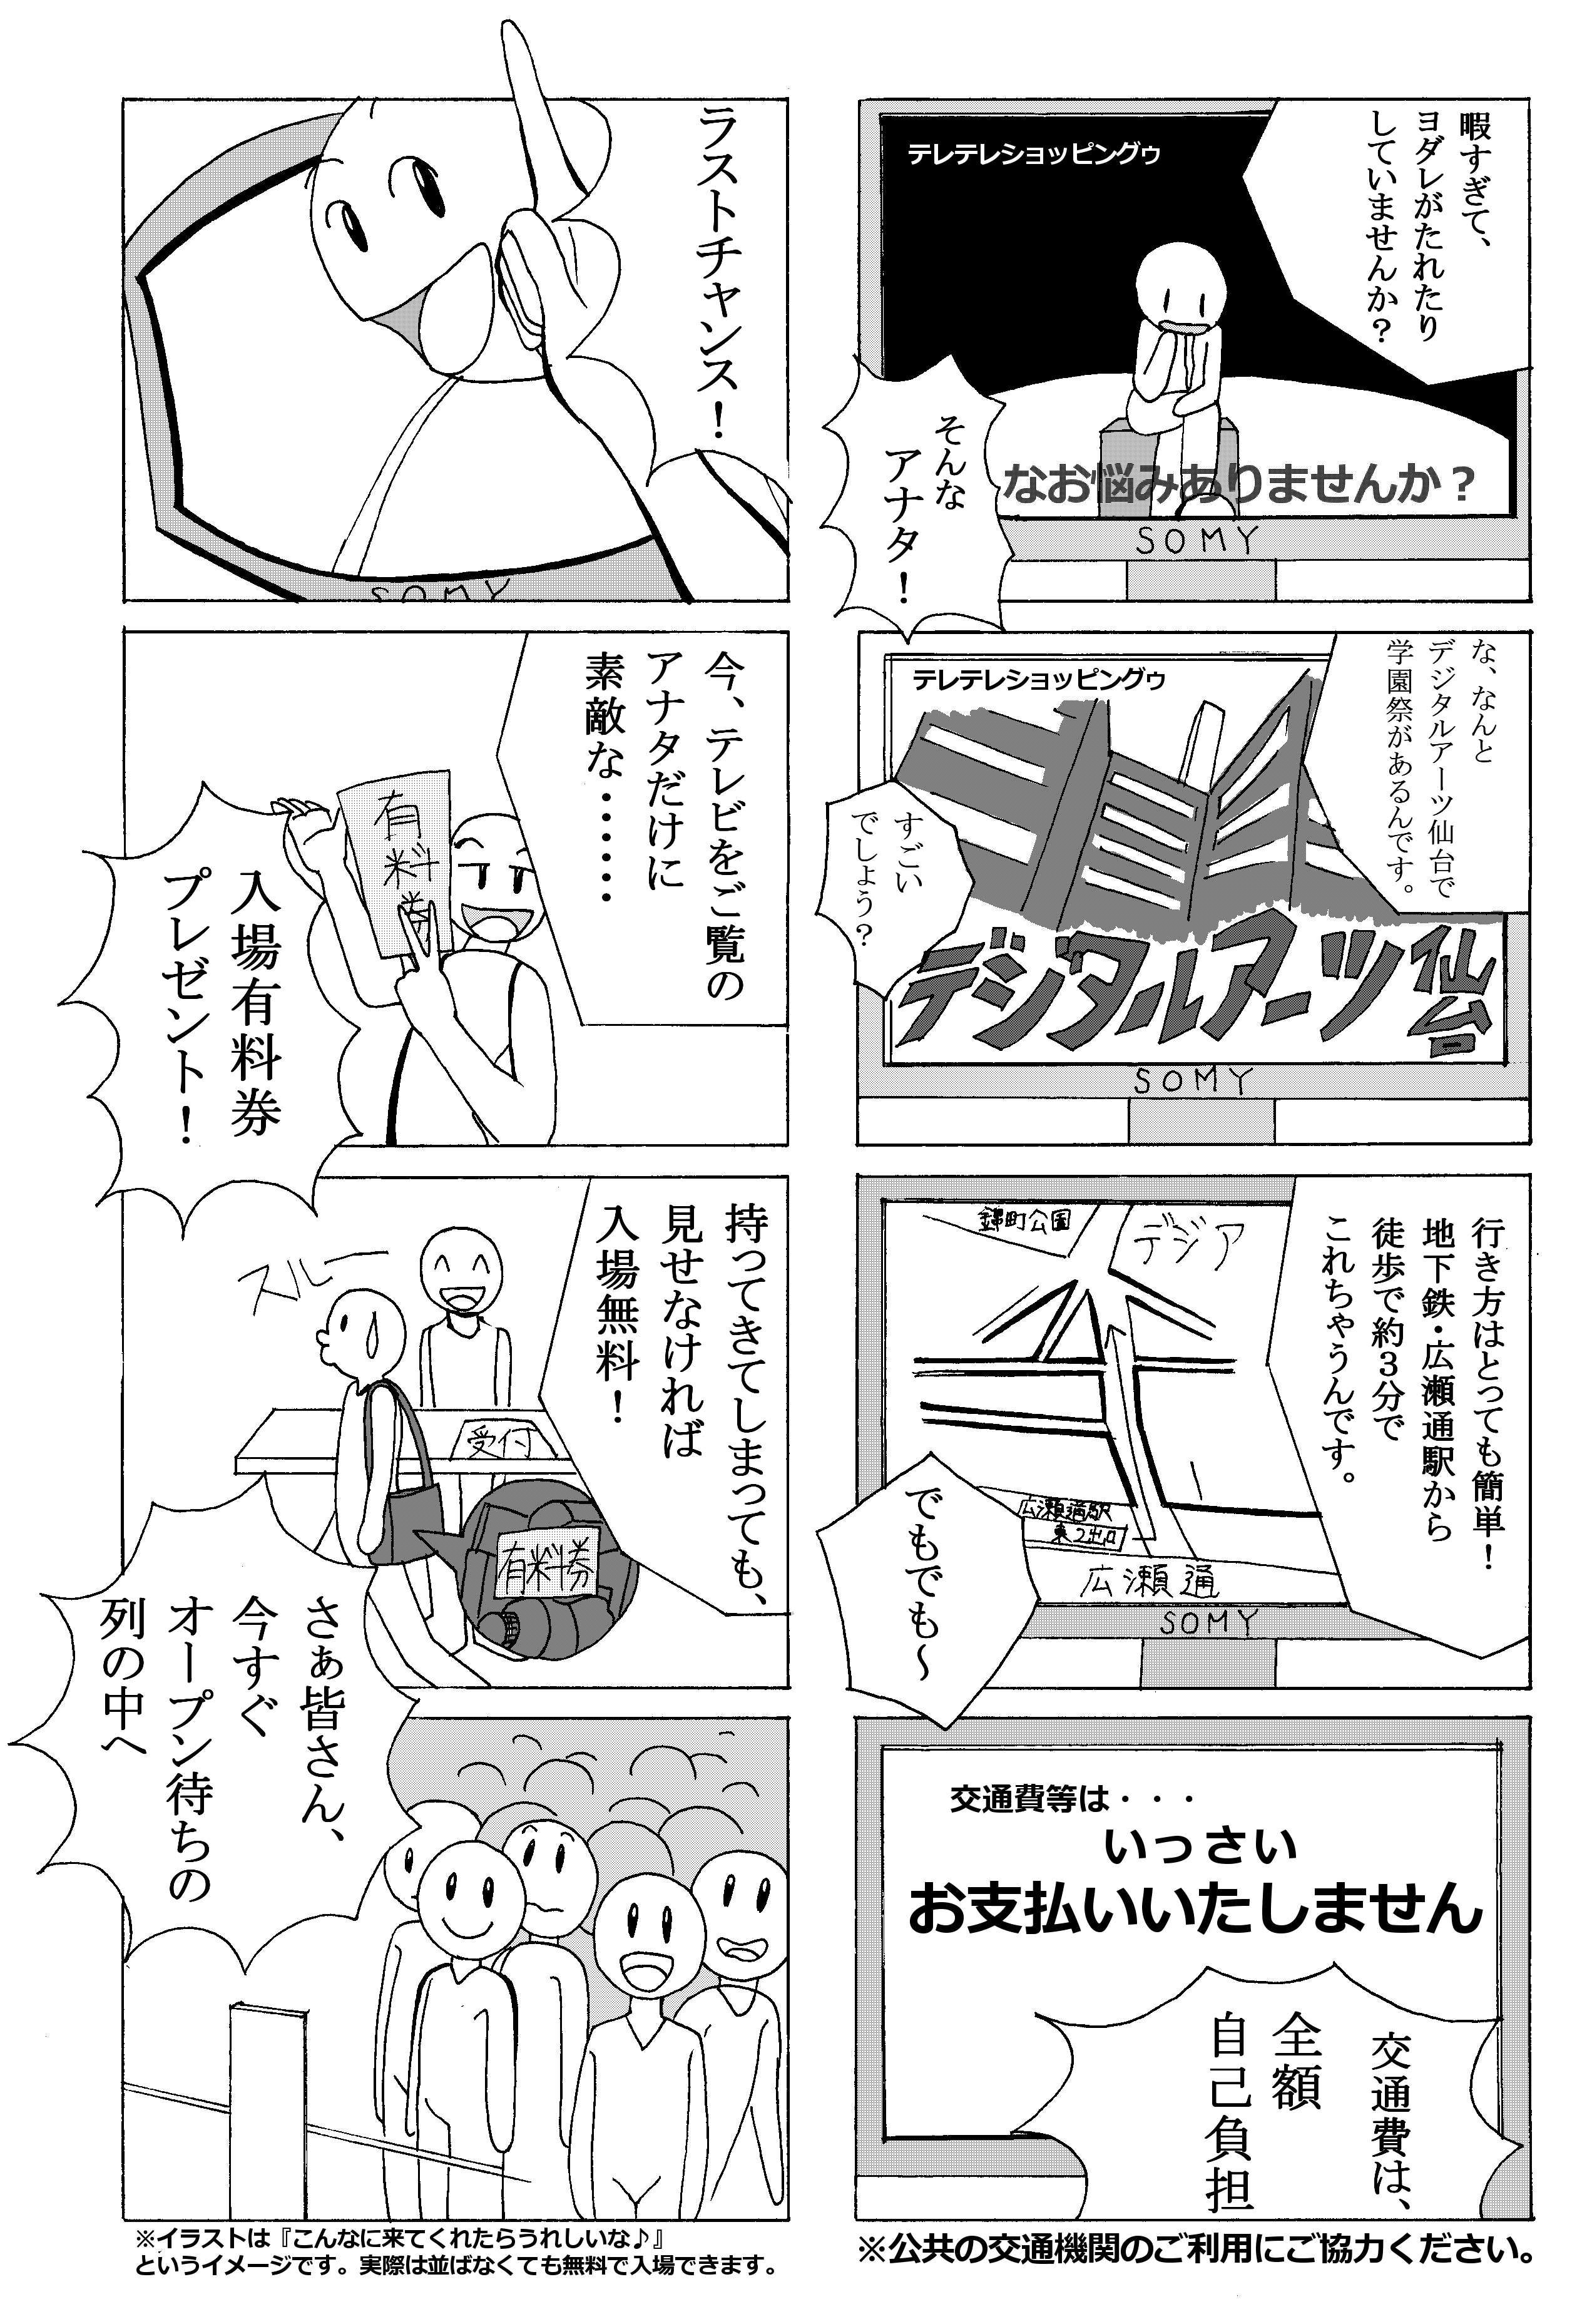 最高のイラスト画像 ユニーク4 コマ 漫画 アニメ